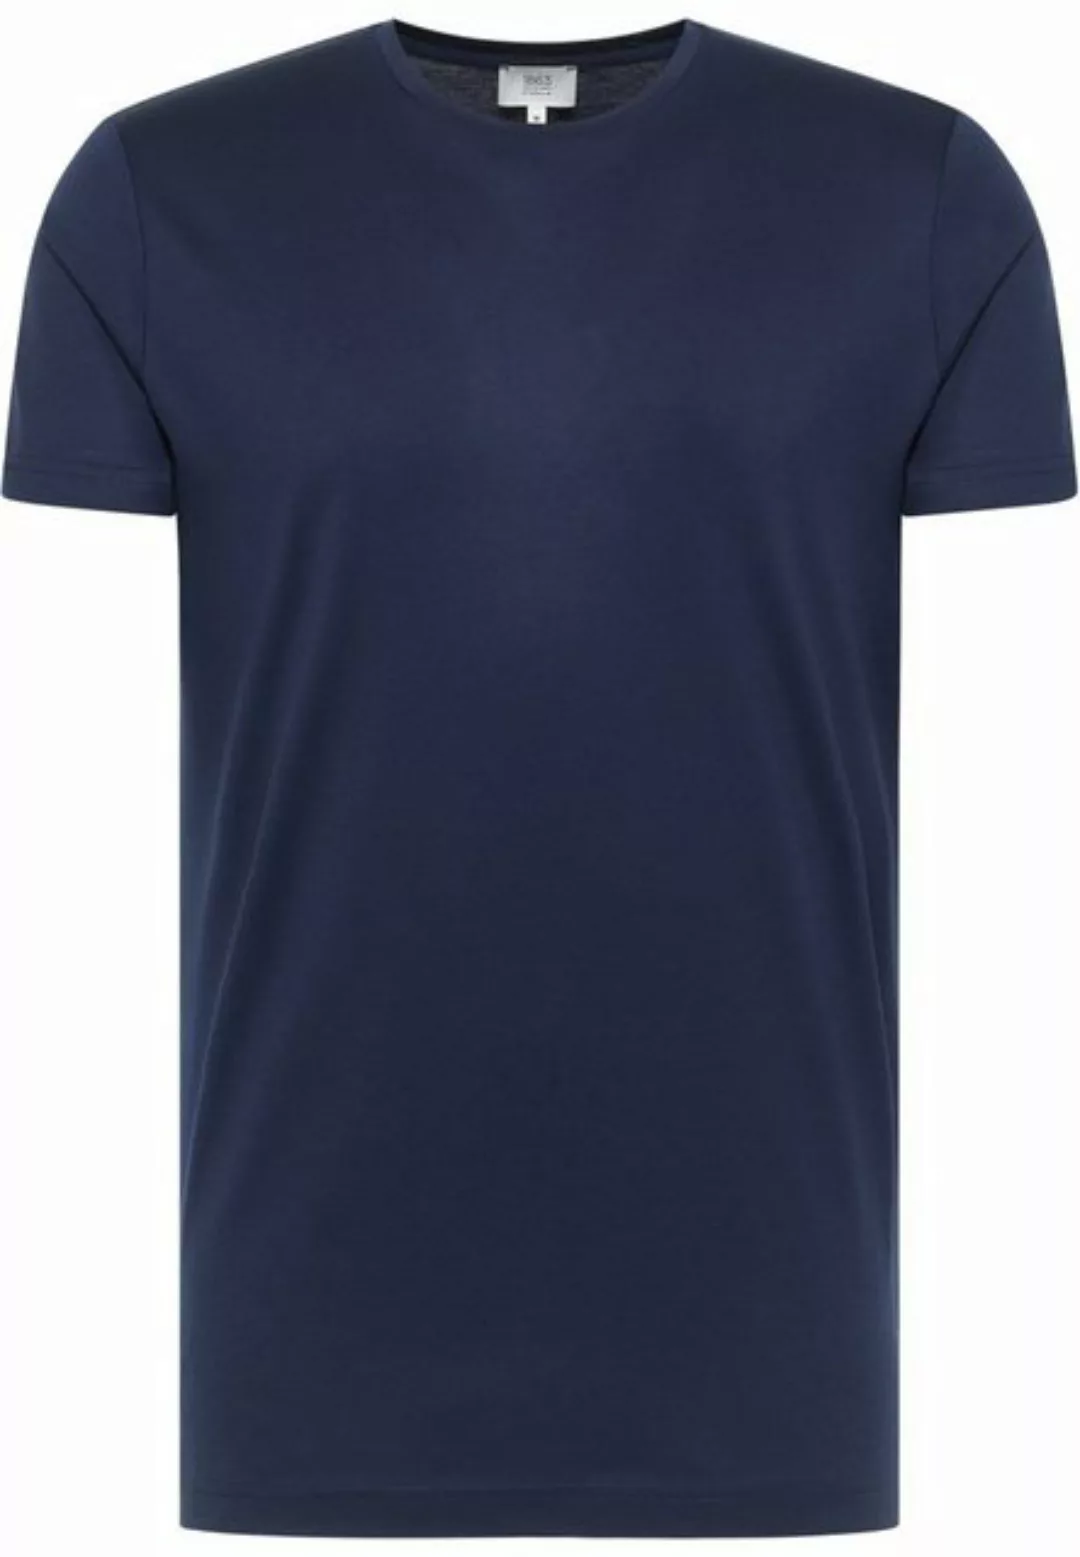 Pierre Cardin Klassische Bluse 1863 by ETERNA Kurzarm T-Shirt marine 887-18 günstig online kaufen